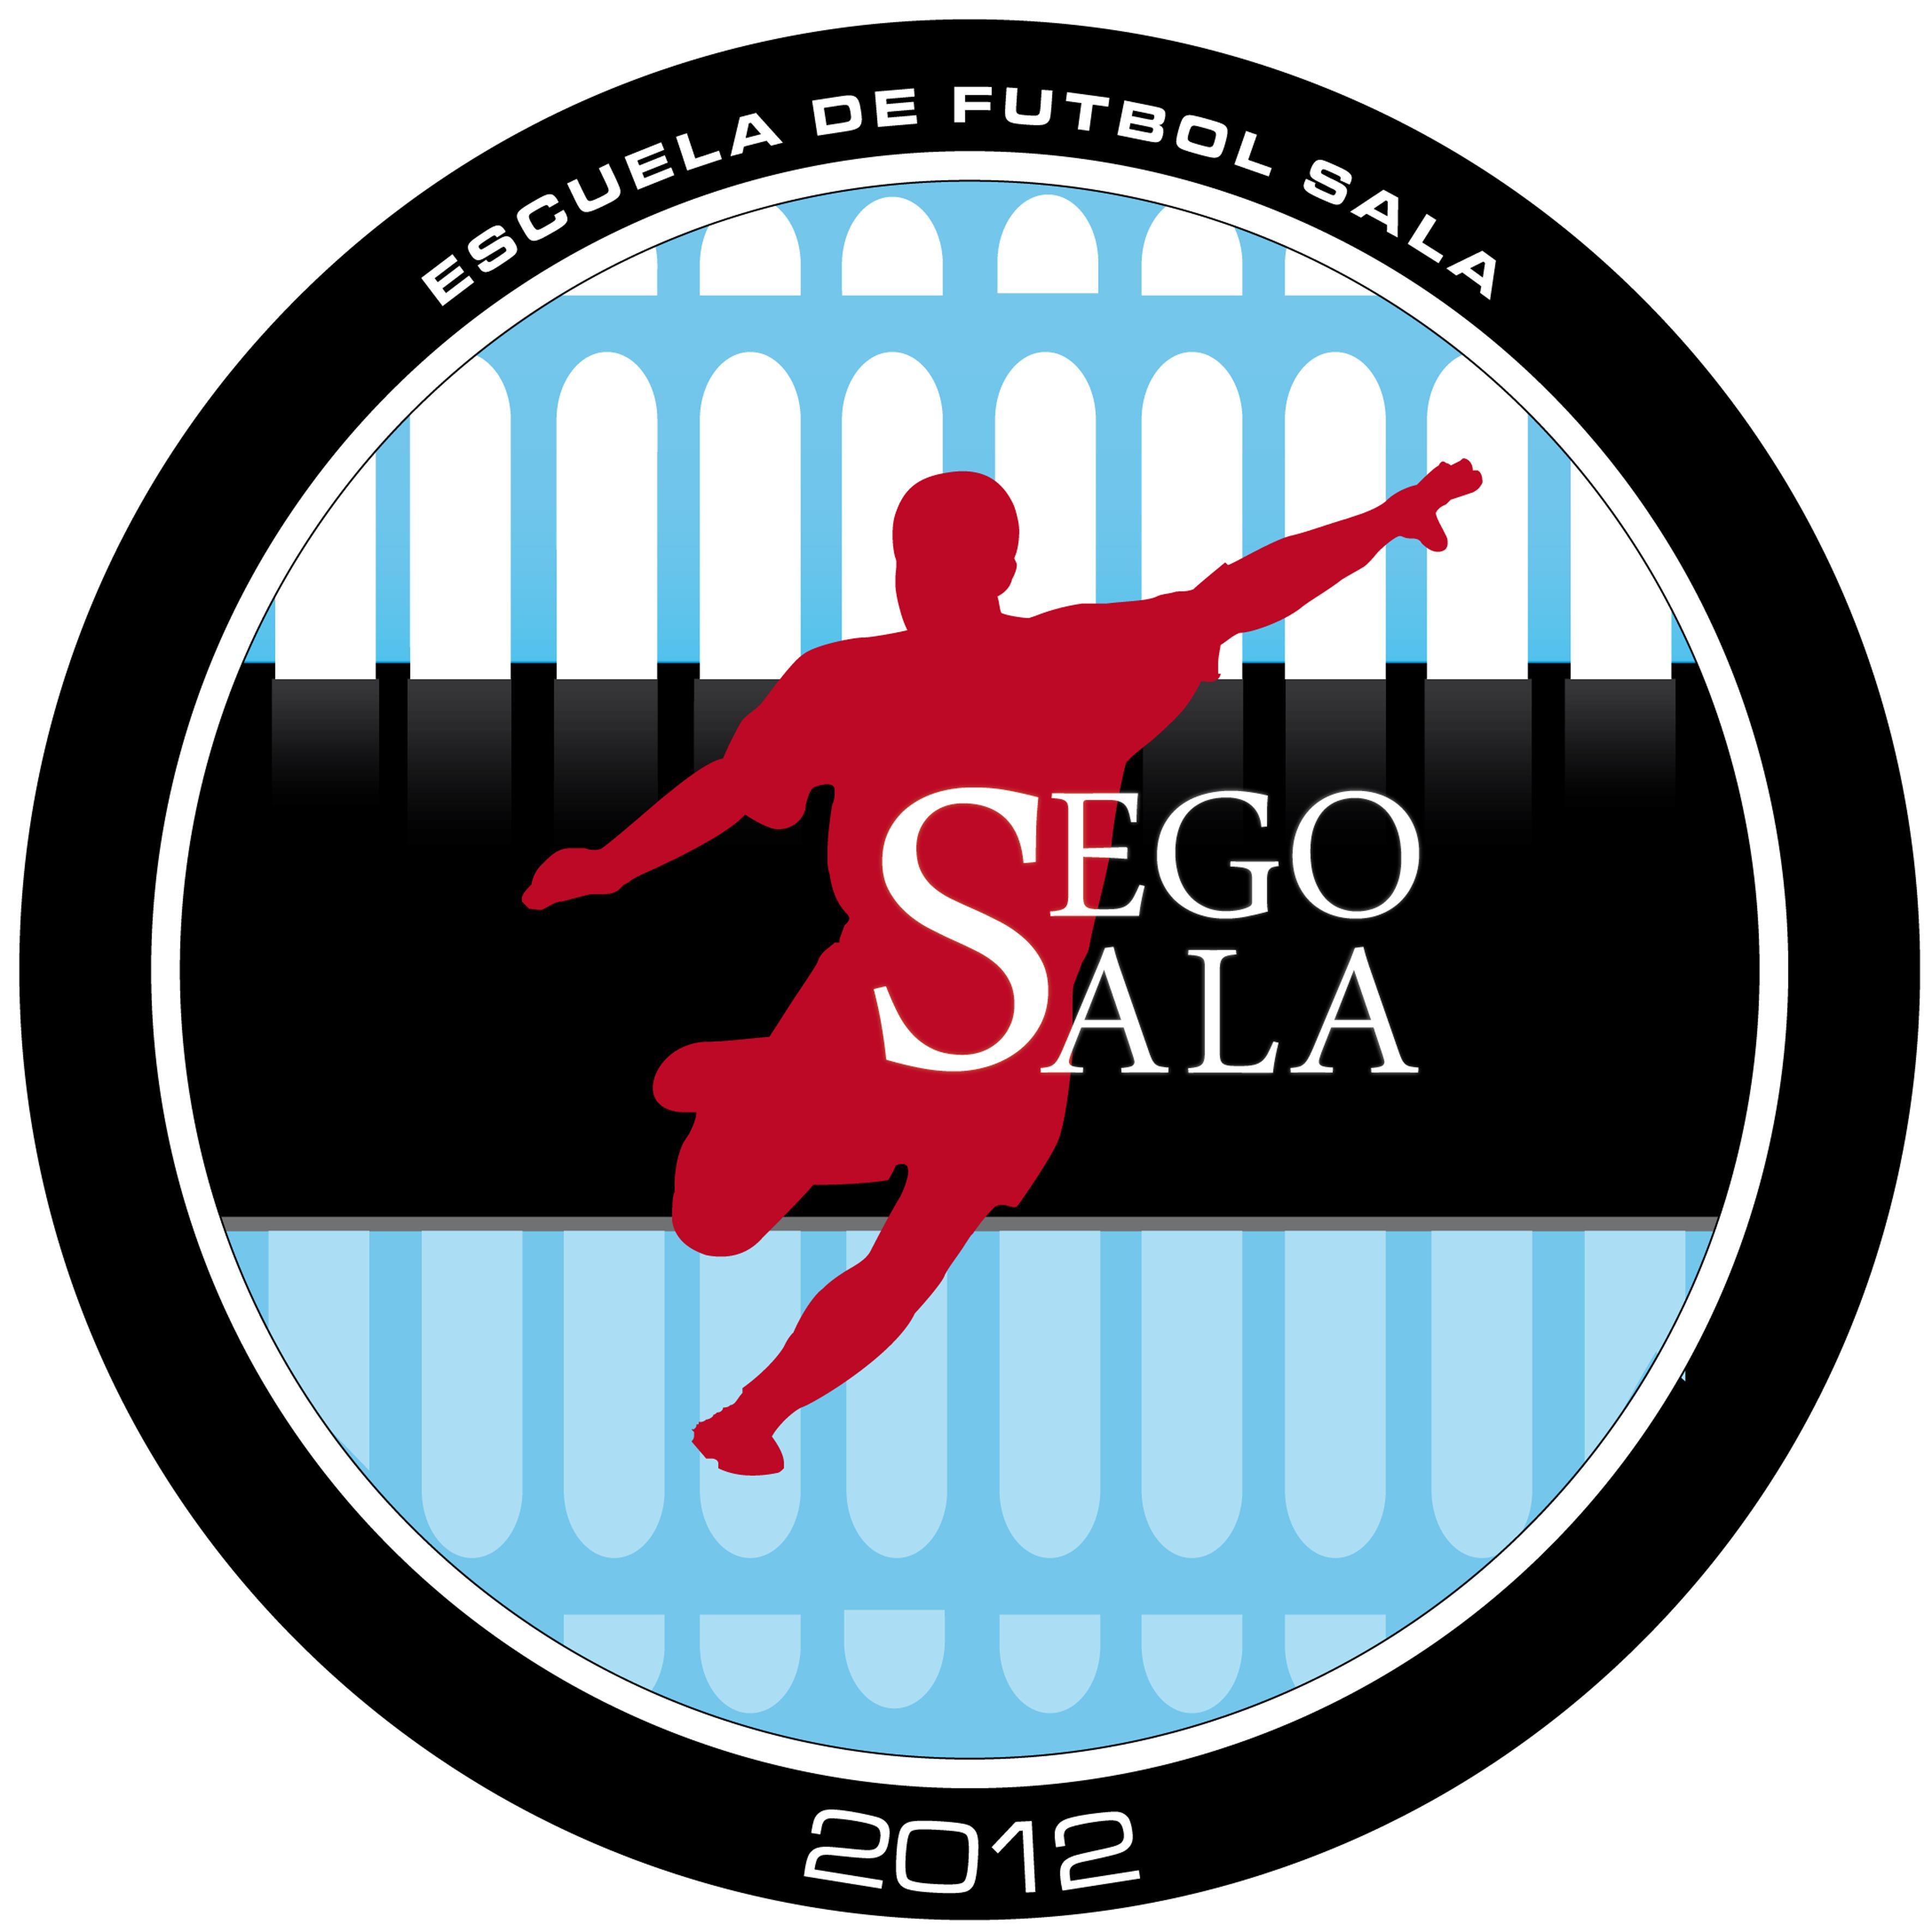 Club Segosala: Abierto el plazo de inscripción para la temporada 2015/2016